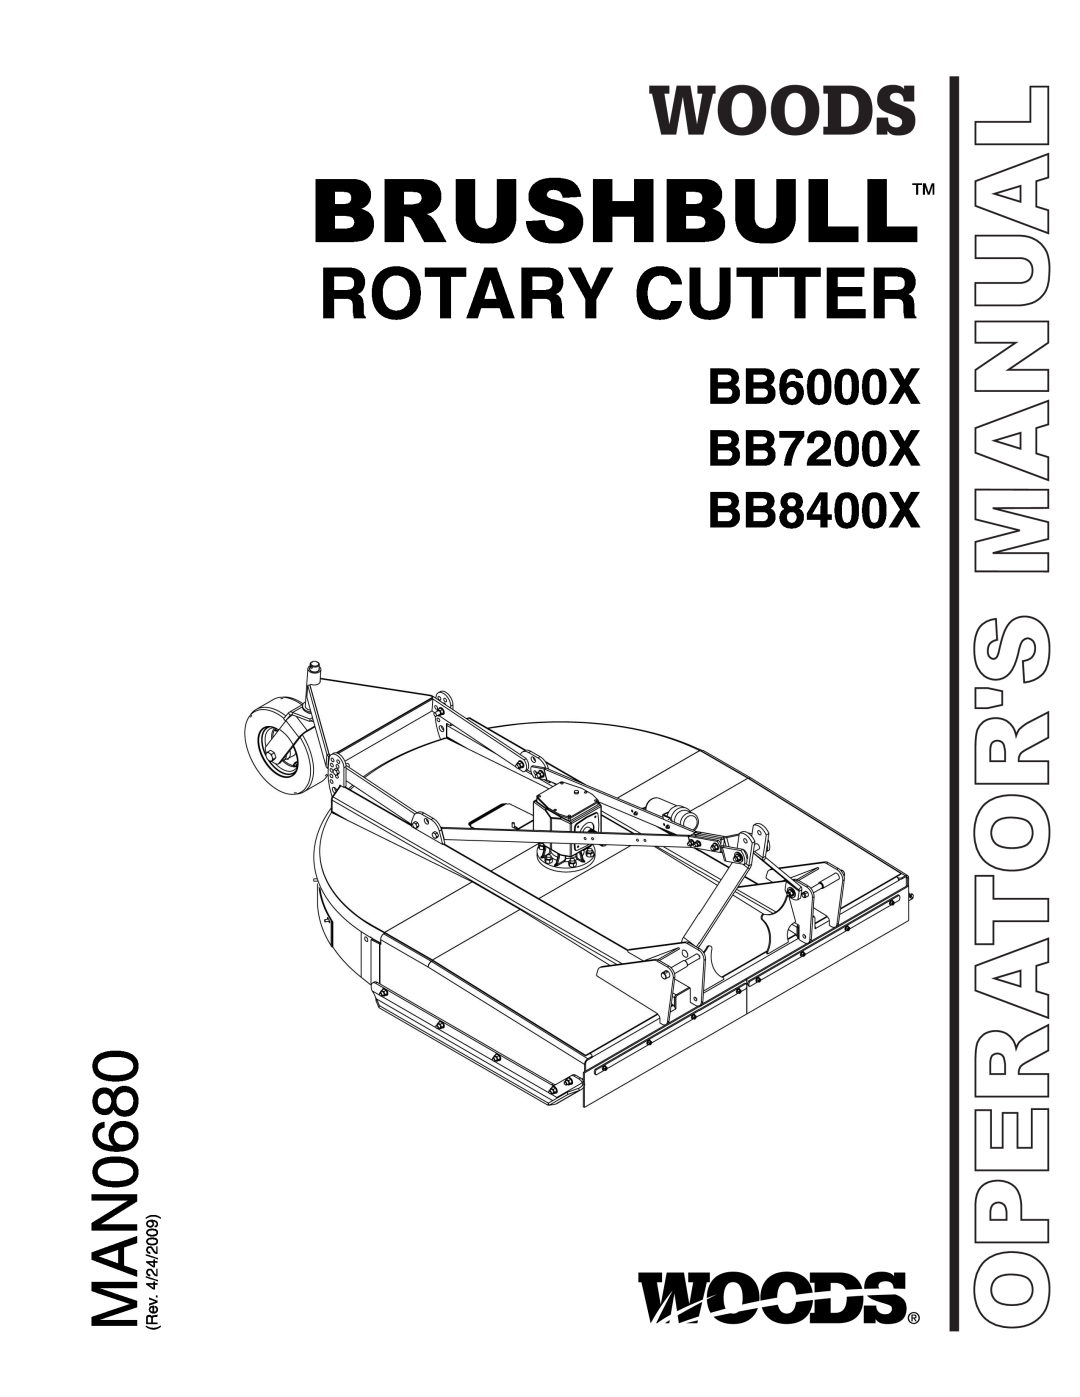 Woods Equipment MAN0680 manual Brushbulltm, Rotary Cutter, BB6000X BB7200X BB8400X, Operators Manual 